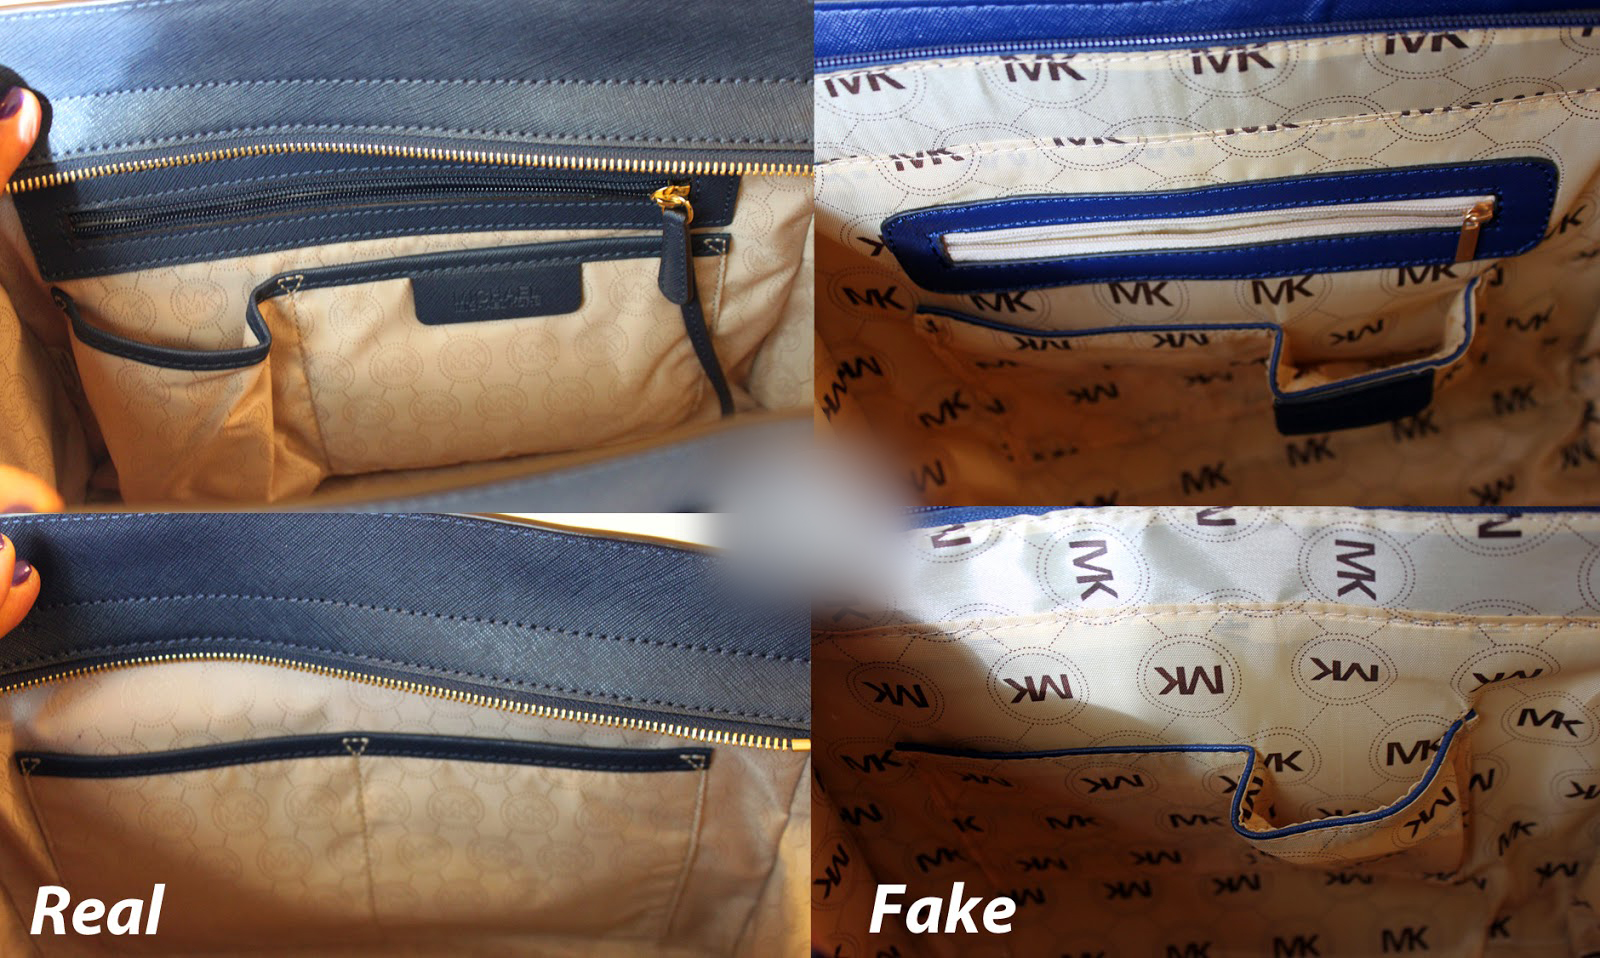 Kiểm tra lớp lót và logo bên trong túi 